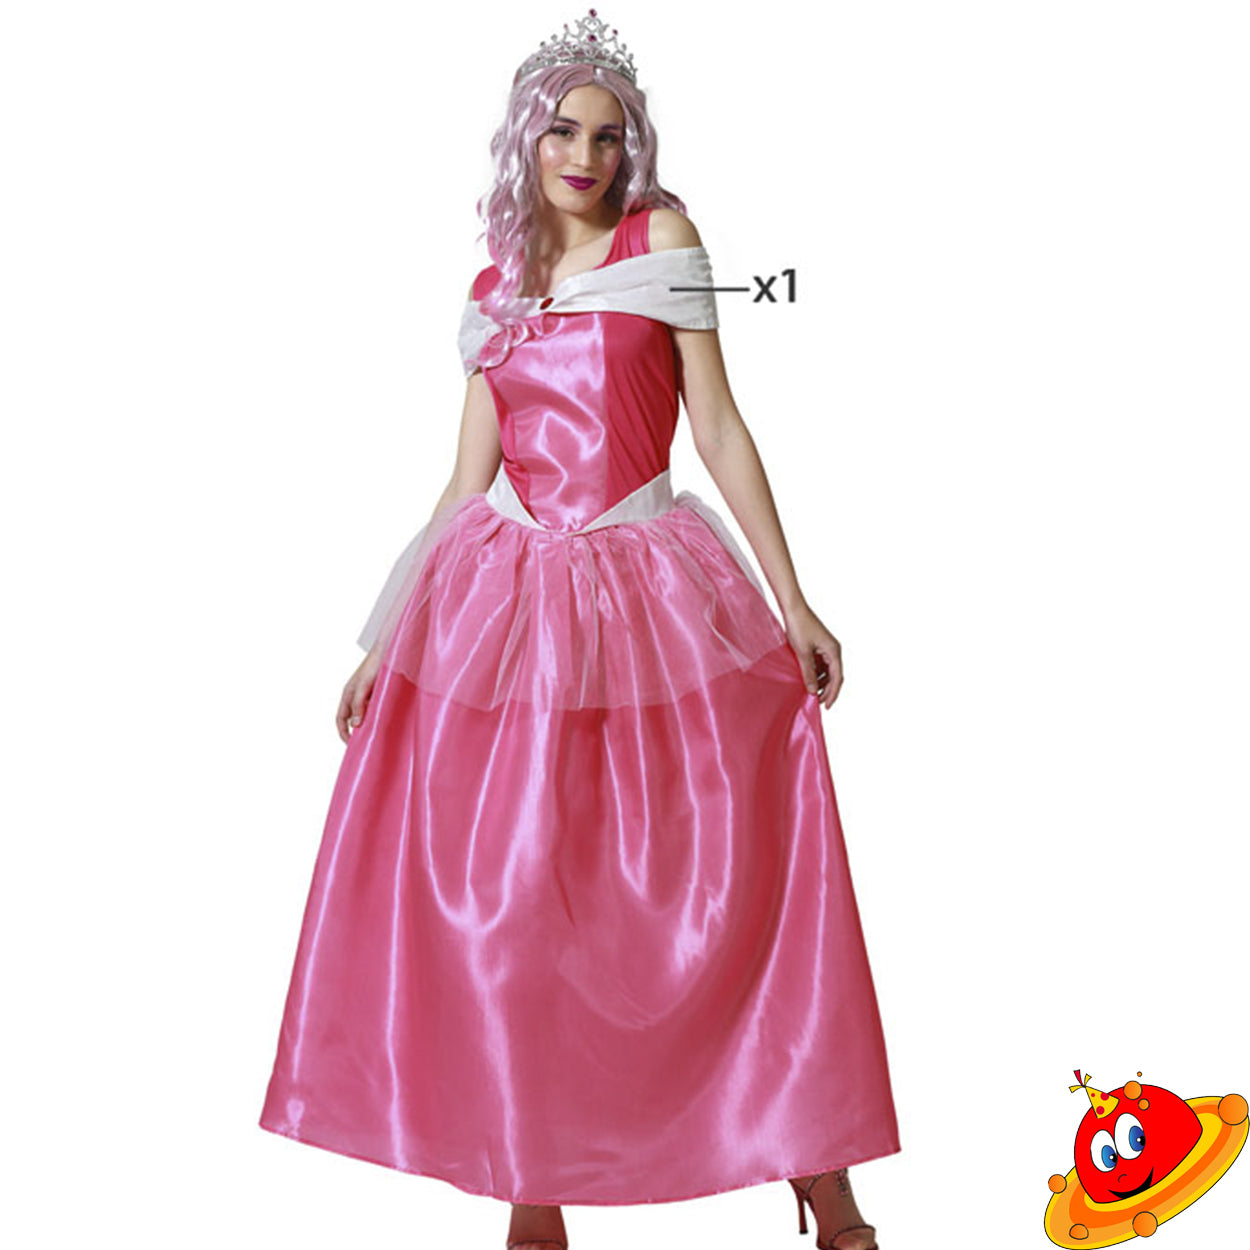 Costume donna Principessa Rosa Peach Tg 36/38 – Universo In Festa